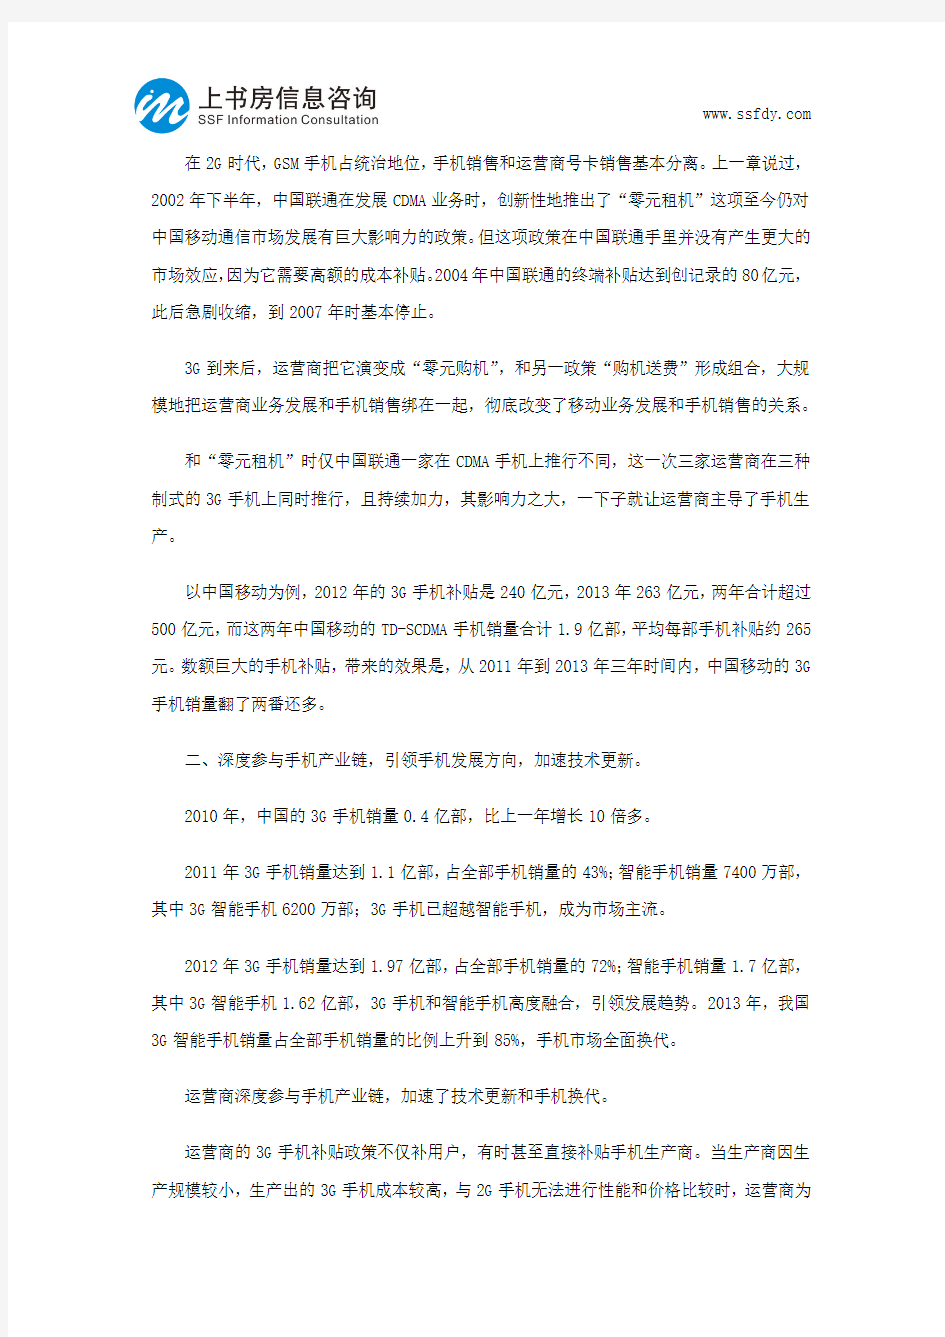 中国手机销售渠道变革-上书房信息咨询